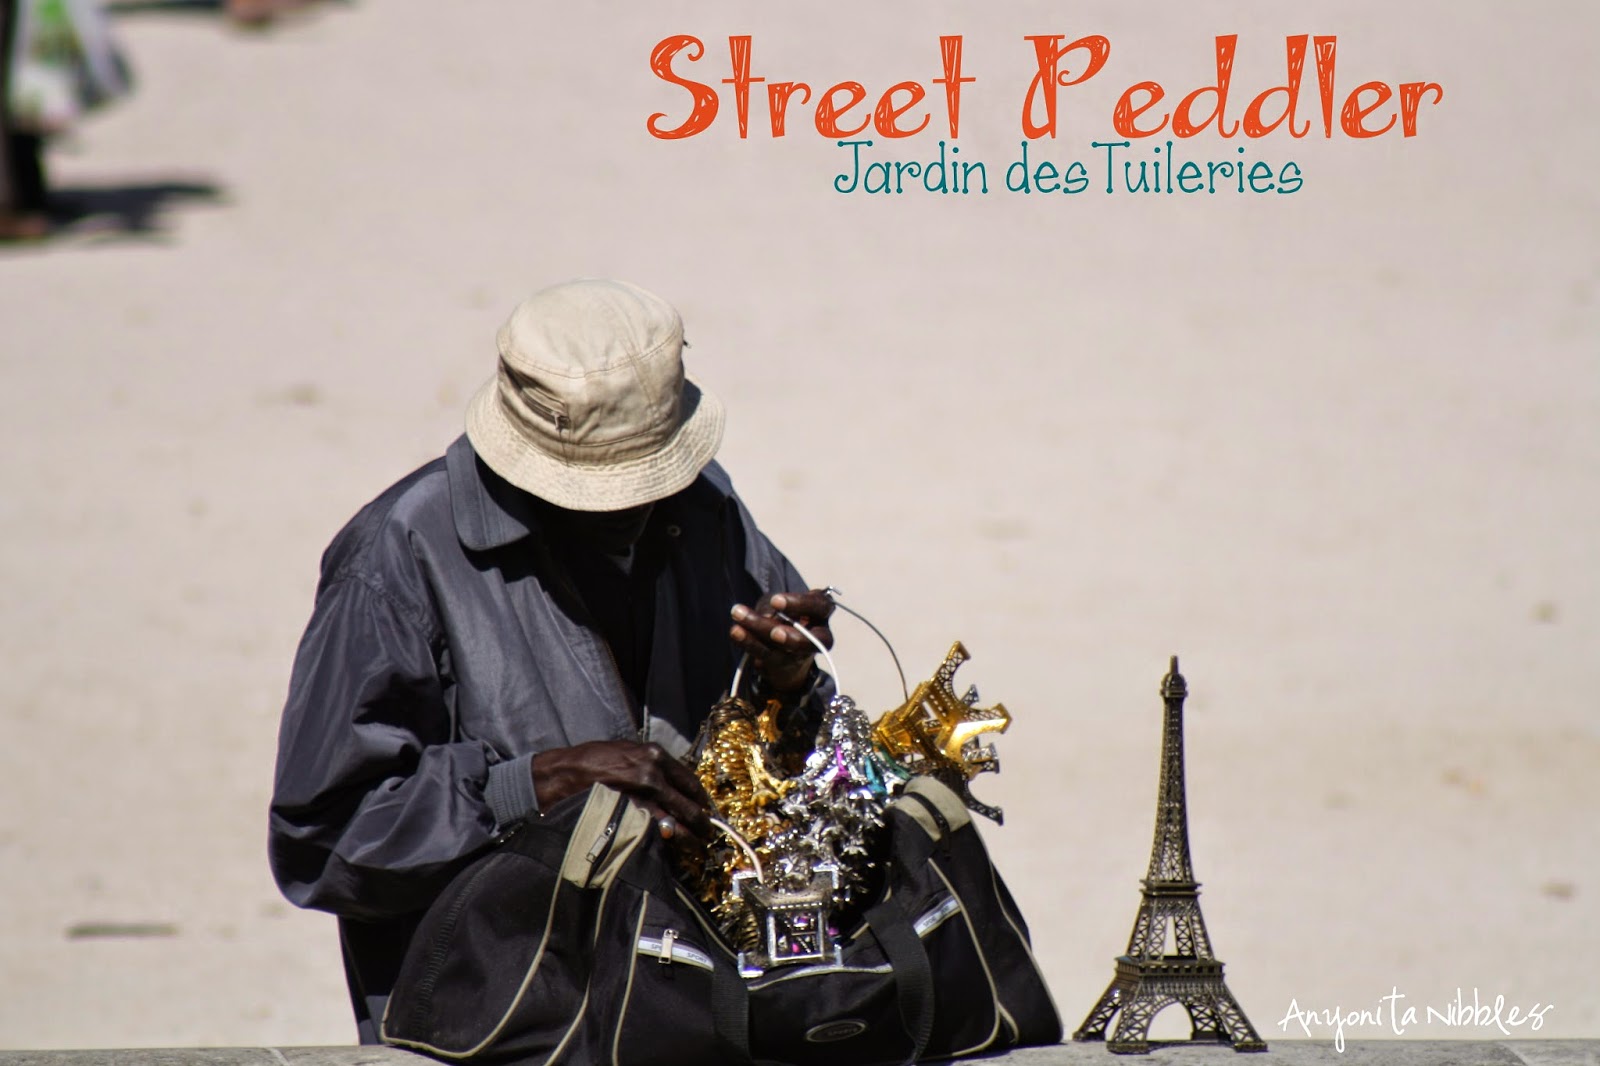 A street peddlar in Paris, France by Anyonita Nibbles